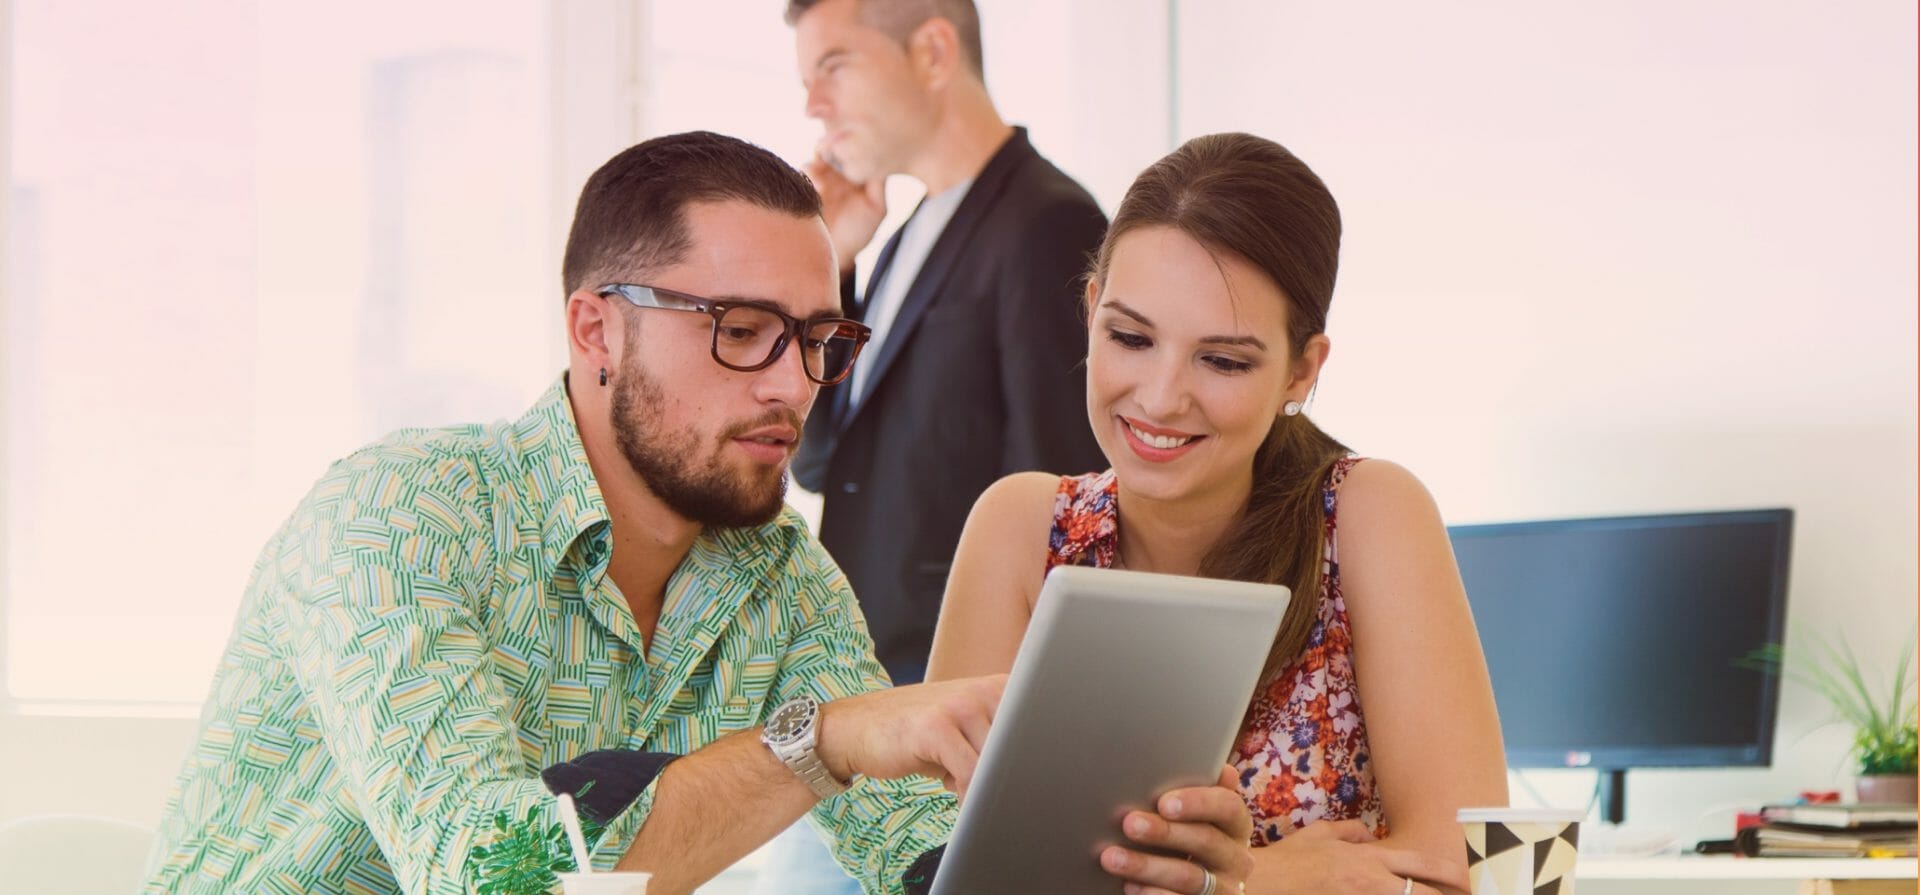 Dos personas jóvenes y sonrientes comparten conocimientos mientras miran la misma tableta electrónica en una oficina.